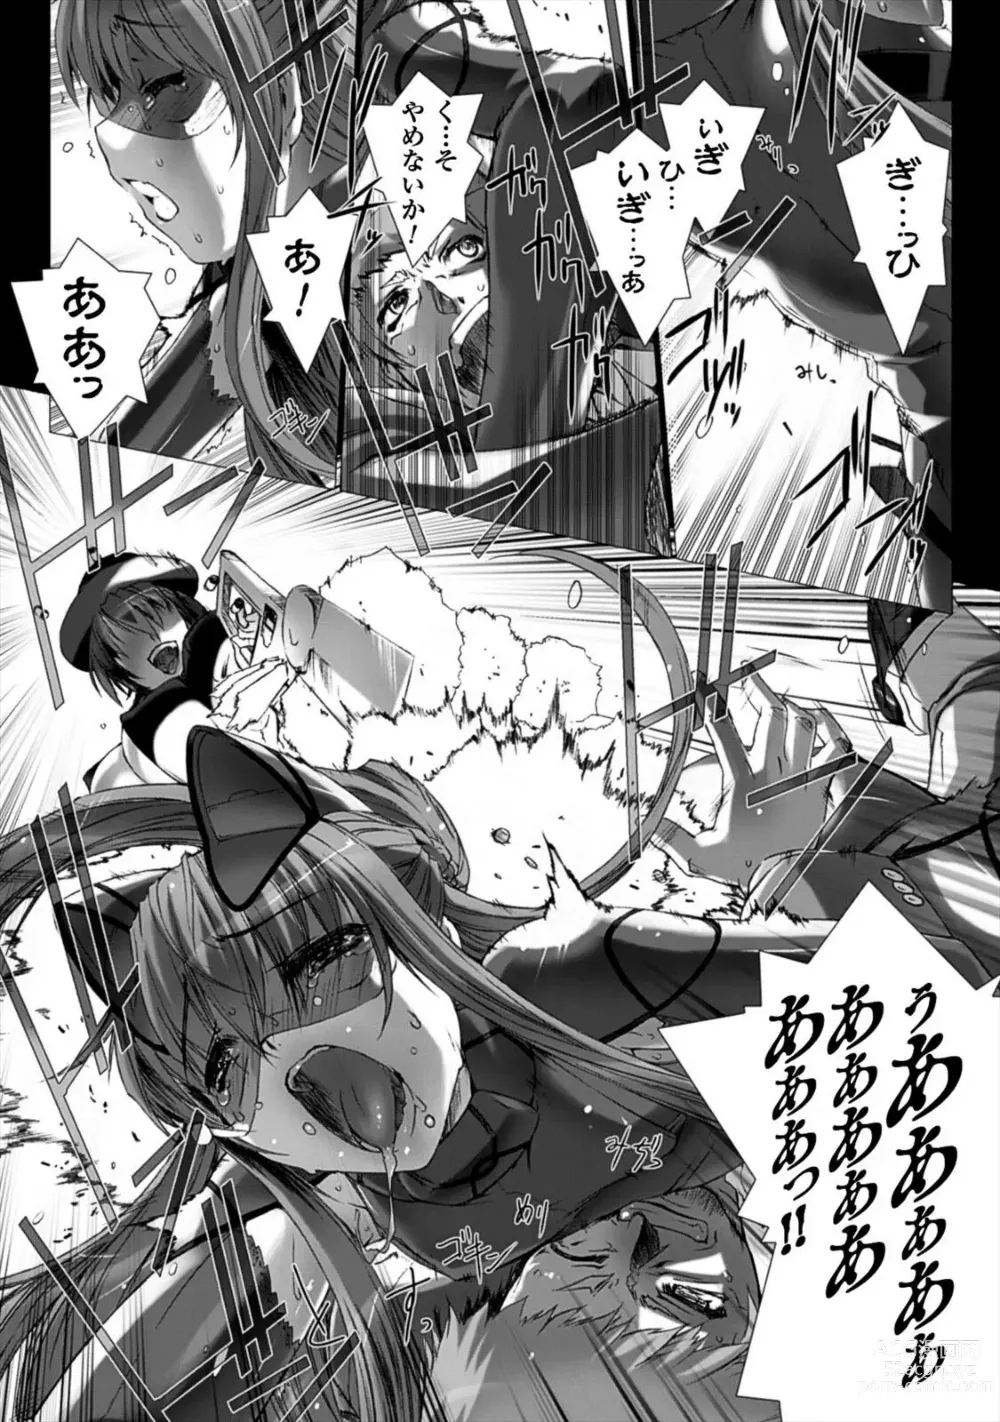 Page 170 of manga Ziggurat 4